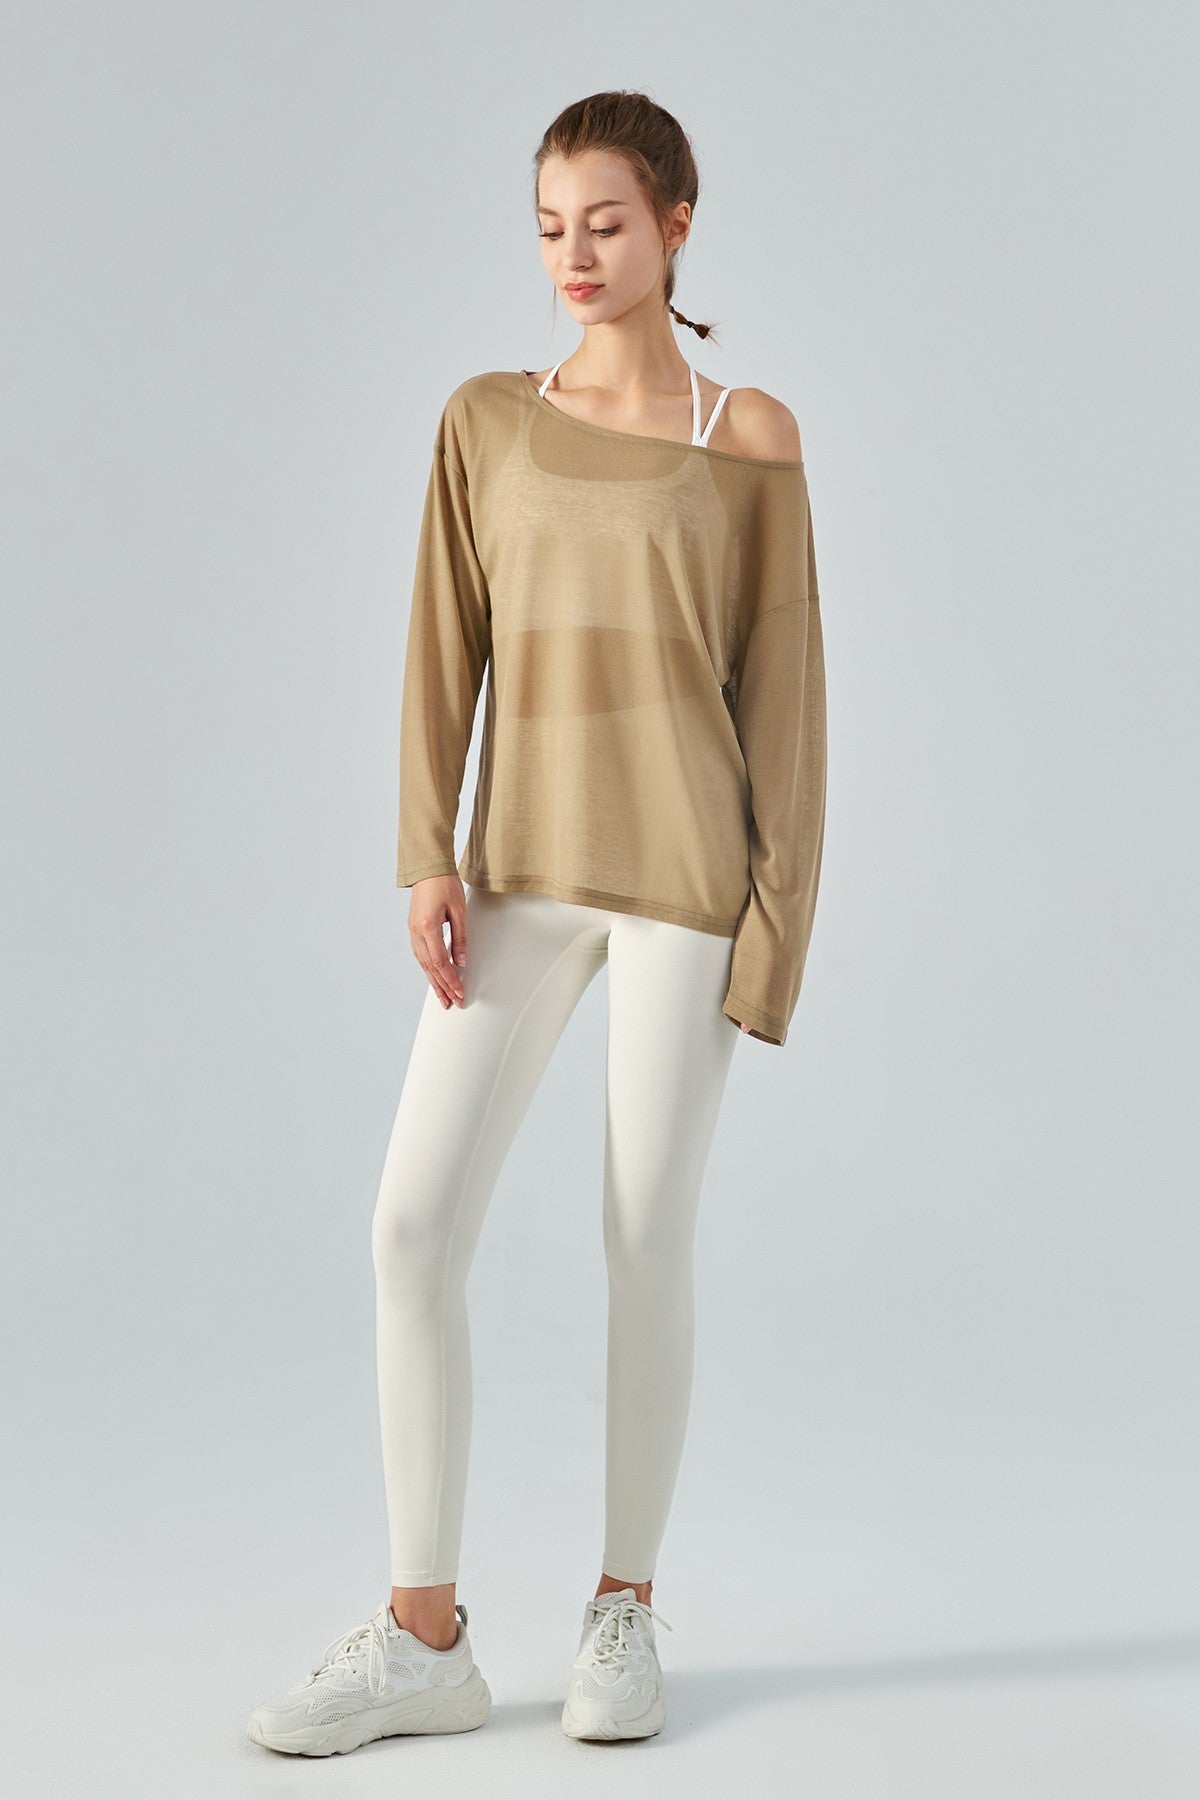 Long Sleeve Sheer Mesh Yoke Mock Neck Top Women's Comfort T-Shirt :  : Clothing, Shoes & Accessories